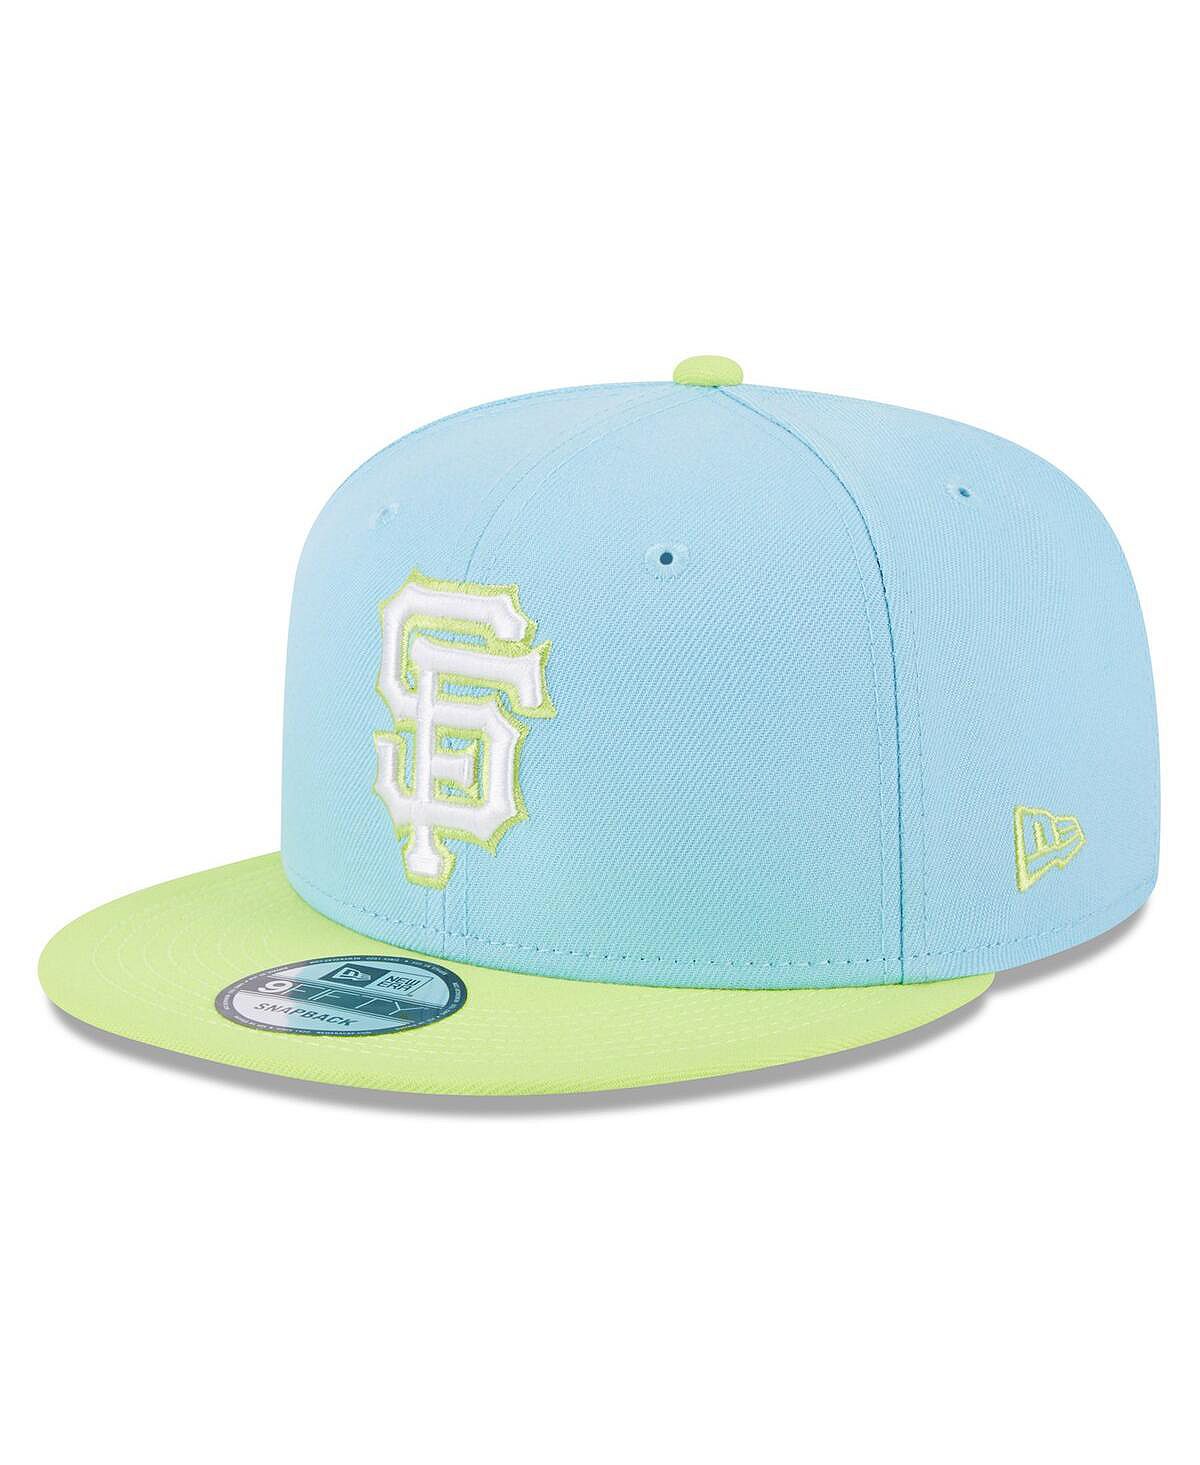 Мужская голубая, неоново-зеленая кепка San Francisco Giants Spring Basic двухцветная кепка Snapback 9FIFTY New Era